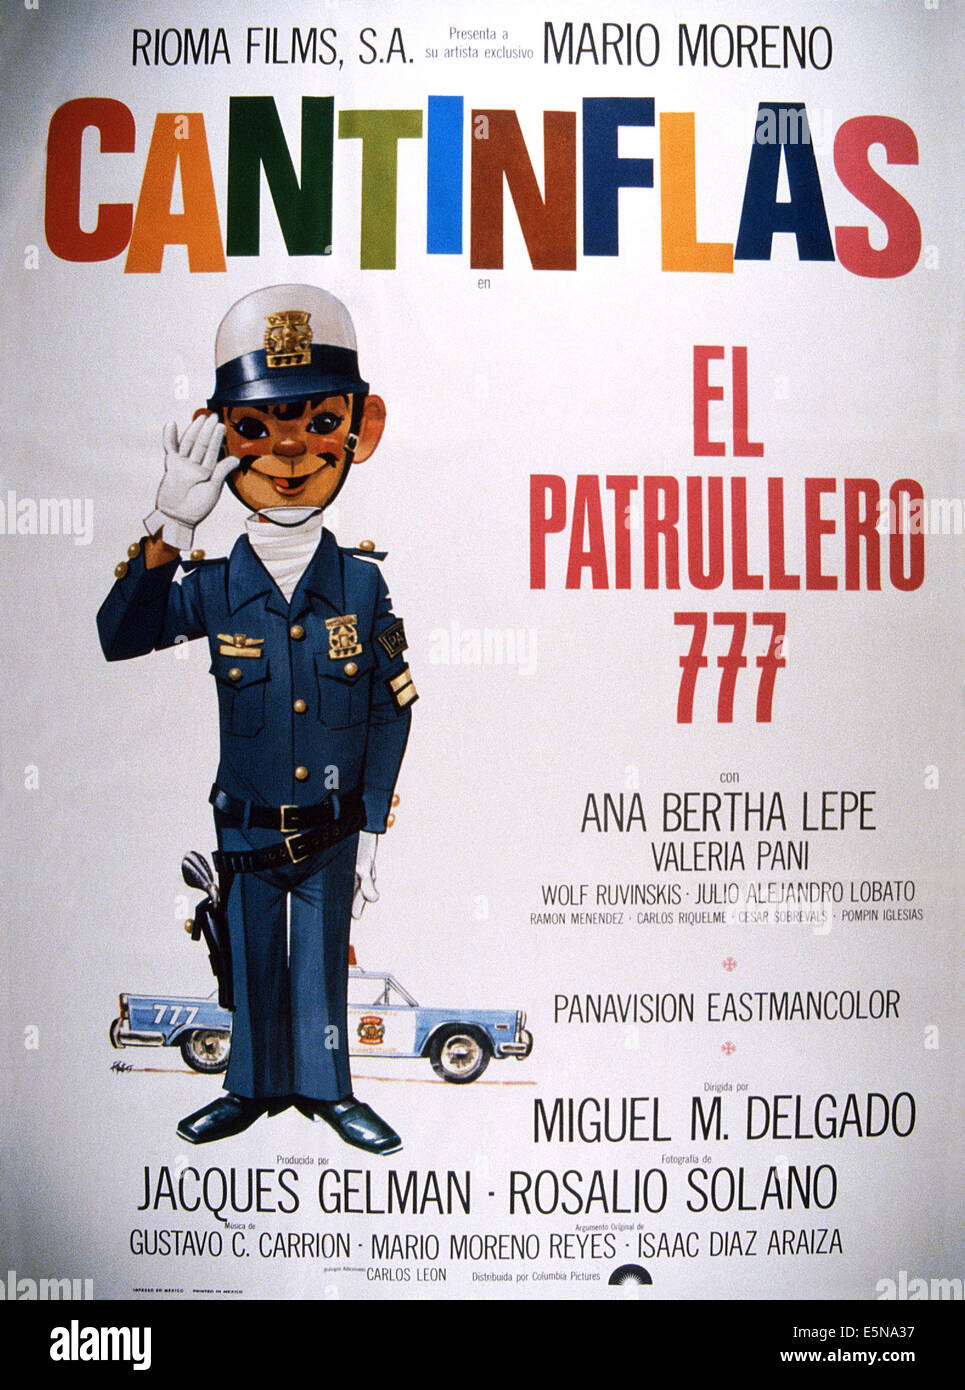 EL PATRULLERO 777 Cantinflas, 1978 © Rioma Films/cortesía Colección Everett Foto de stock